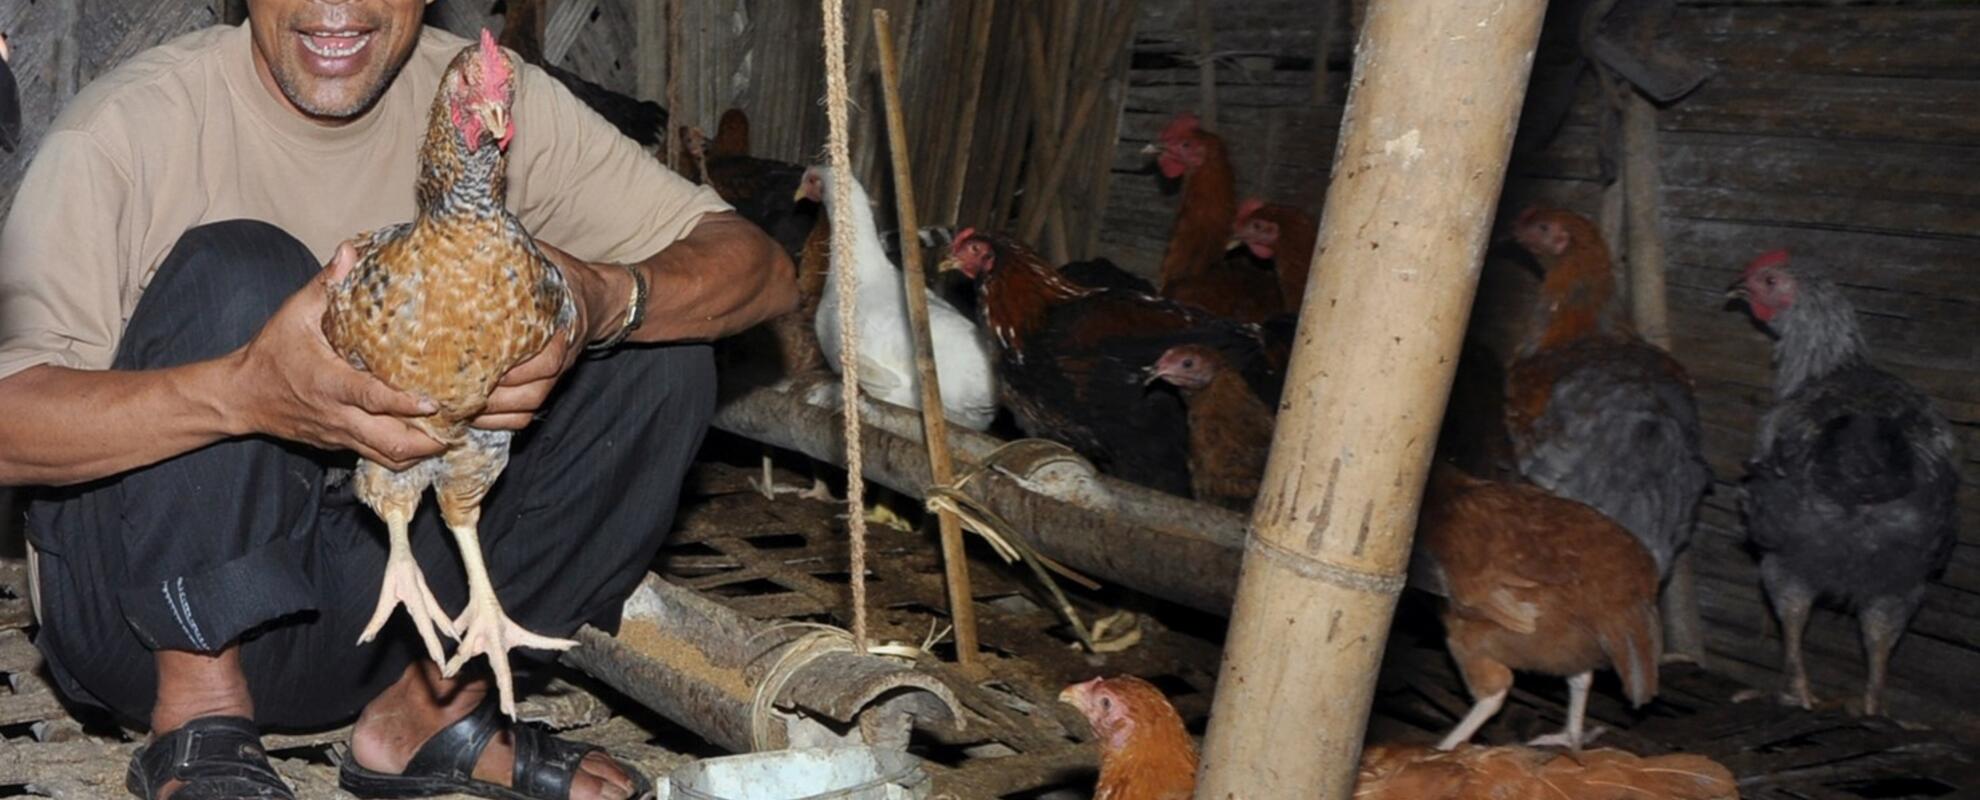 A flock of Kadaknath native chicken reared under deep litter system